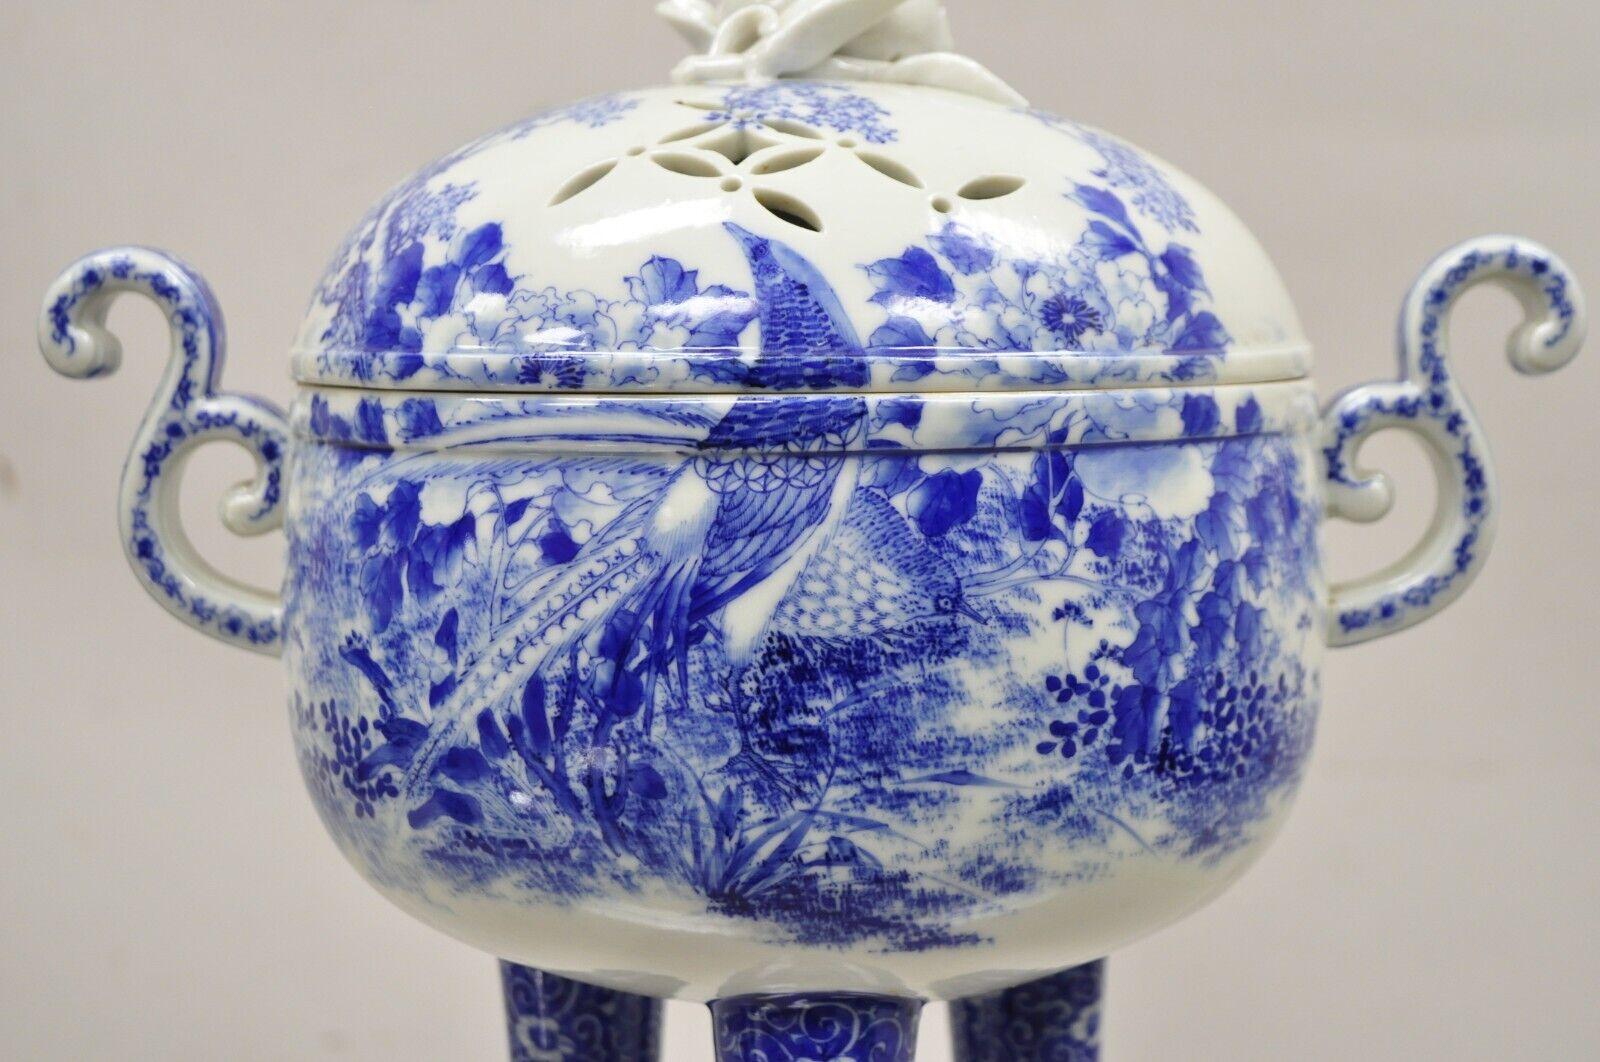 Ancien brûleur d'encens sur pied en porcelaine chinoise bleue et blanche du 19ème siècle. L'objet présente des scènes bleues et blanches avec des oiseaux et des arbres, des poignées à volutes, une base tripode à pieds, un couvercle percé, une très